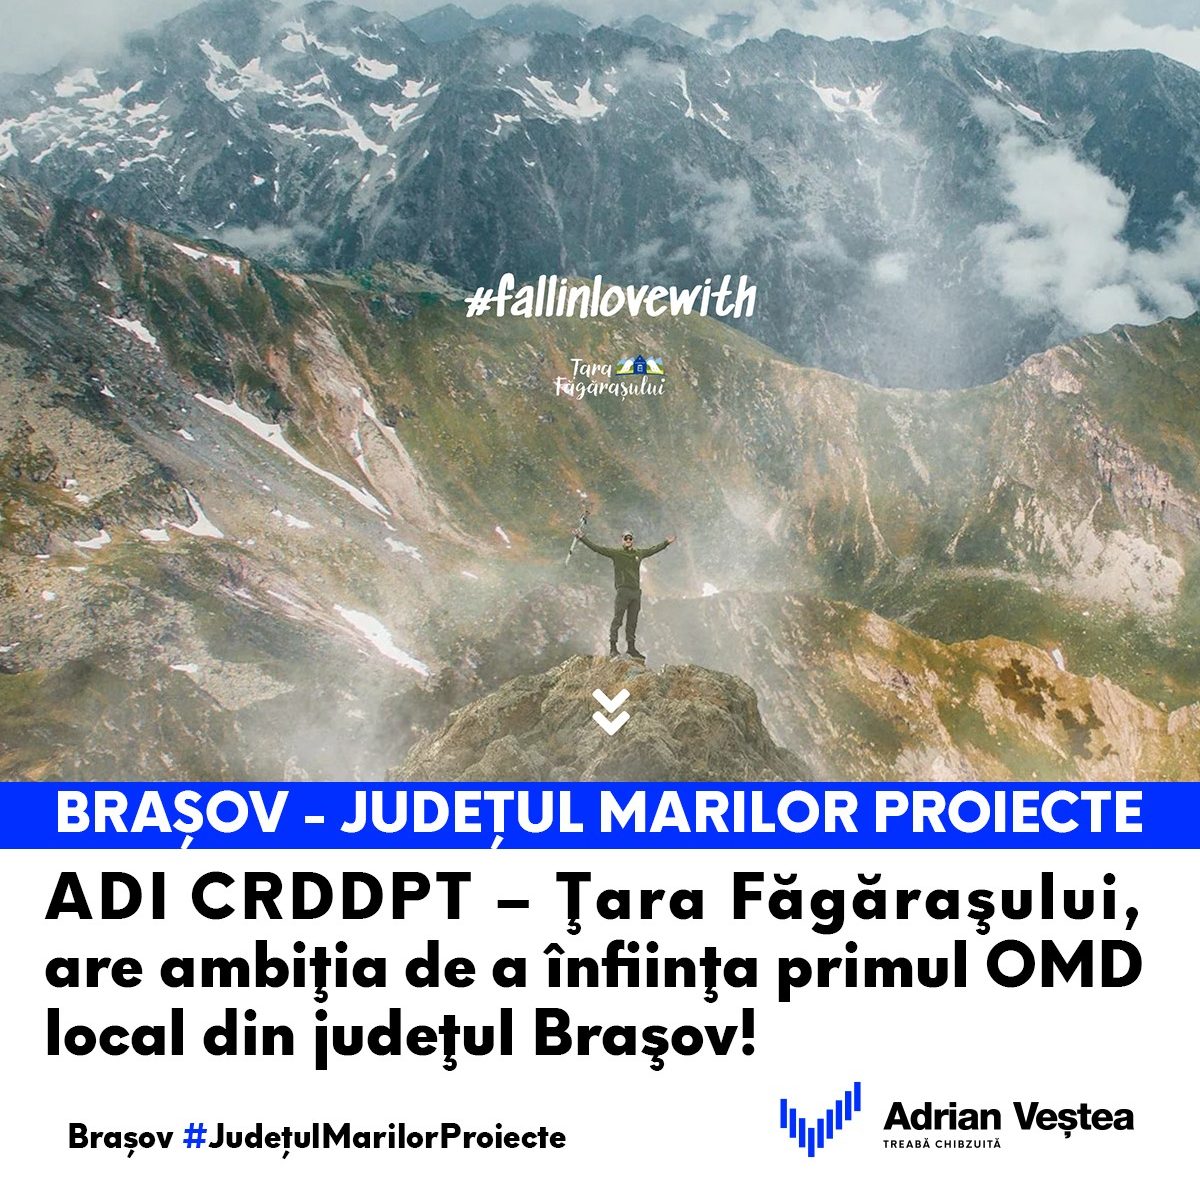 Președinte CJ Brașov Adrian Ioan Veştea înființarea primului OMD local în Ţara Făgăraşului de către ADI CRDDPT